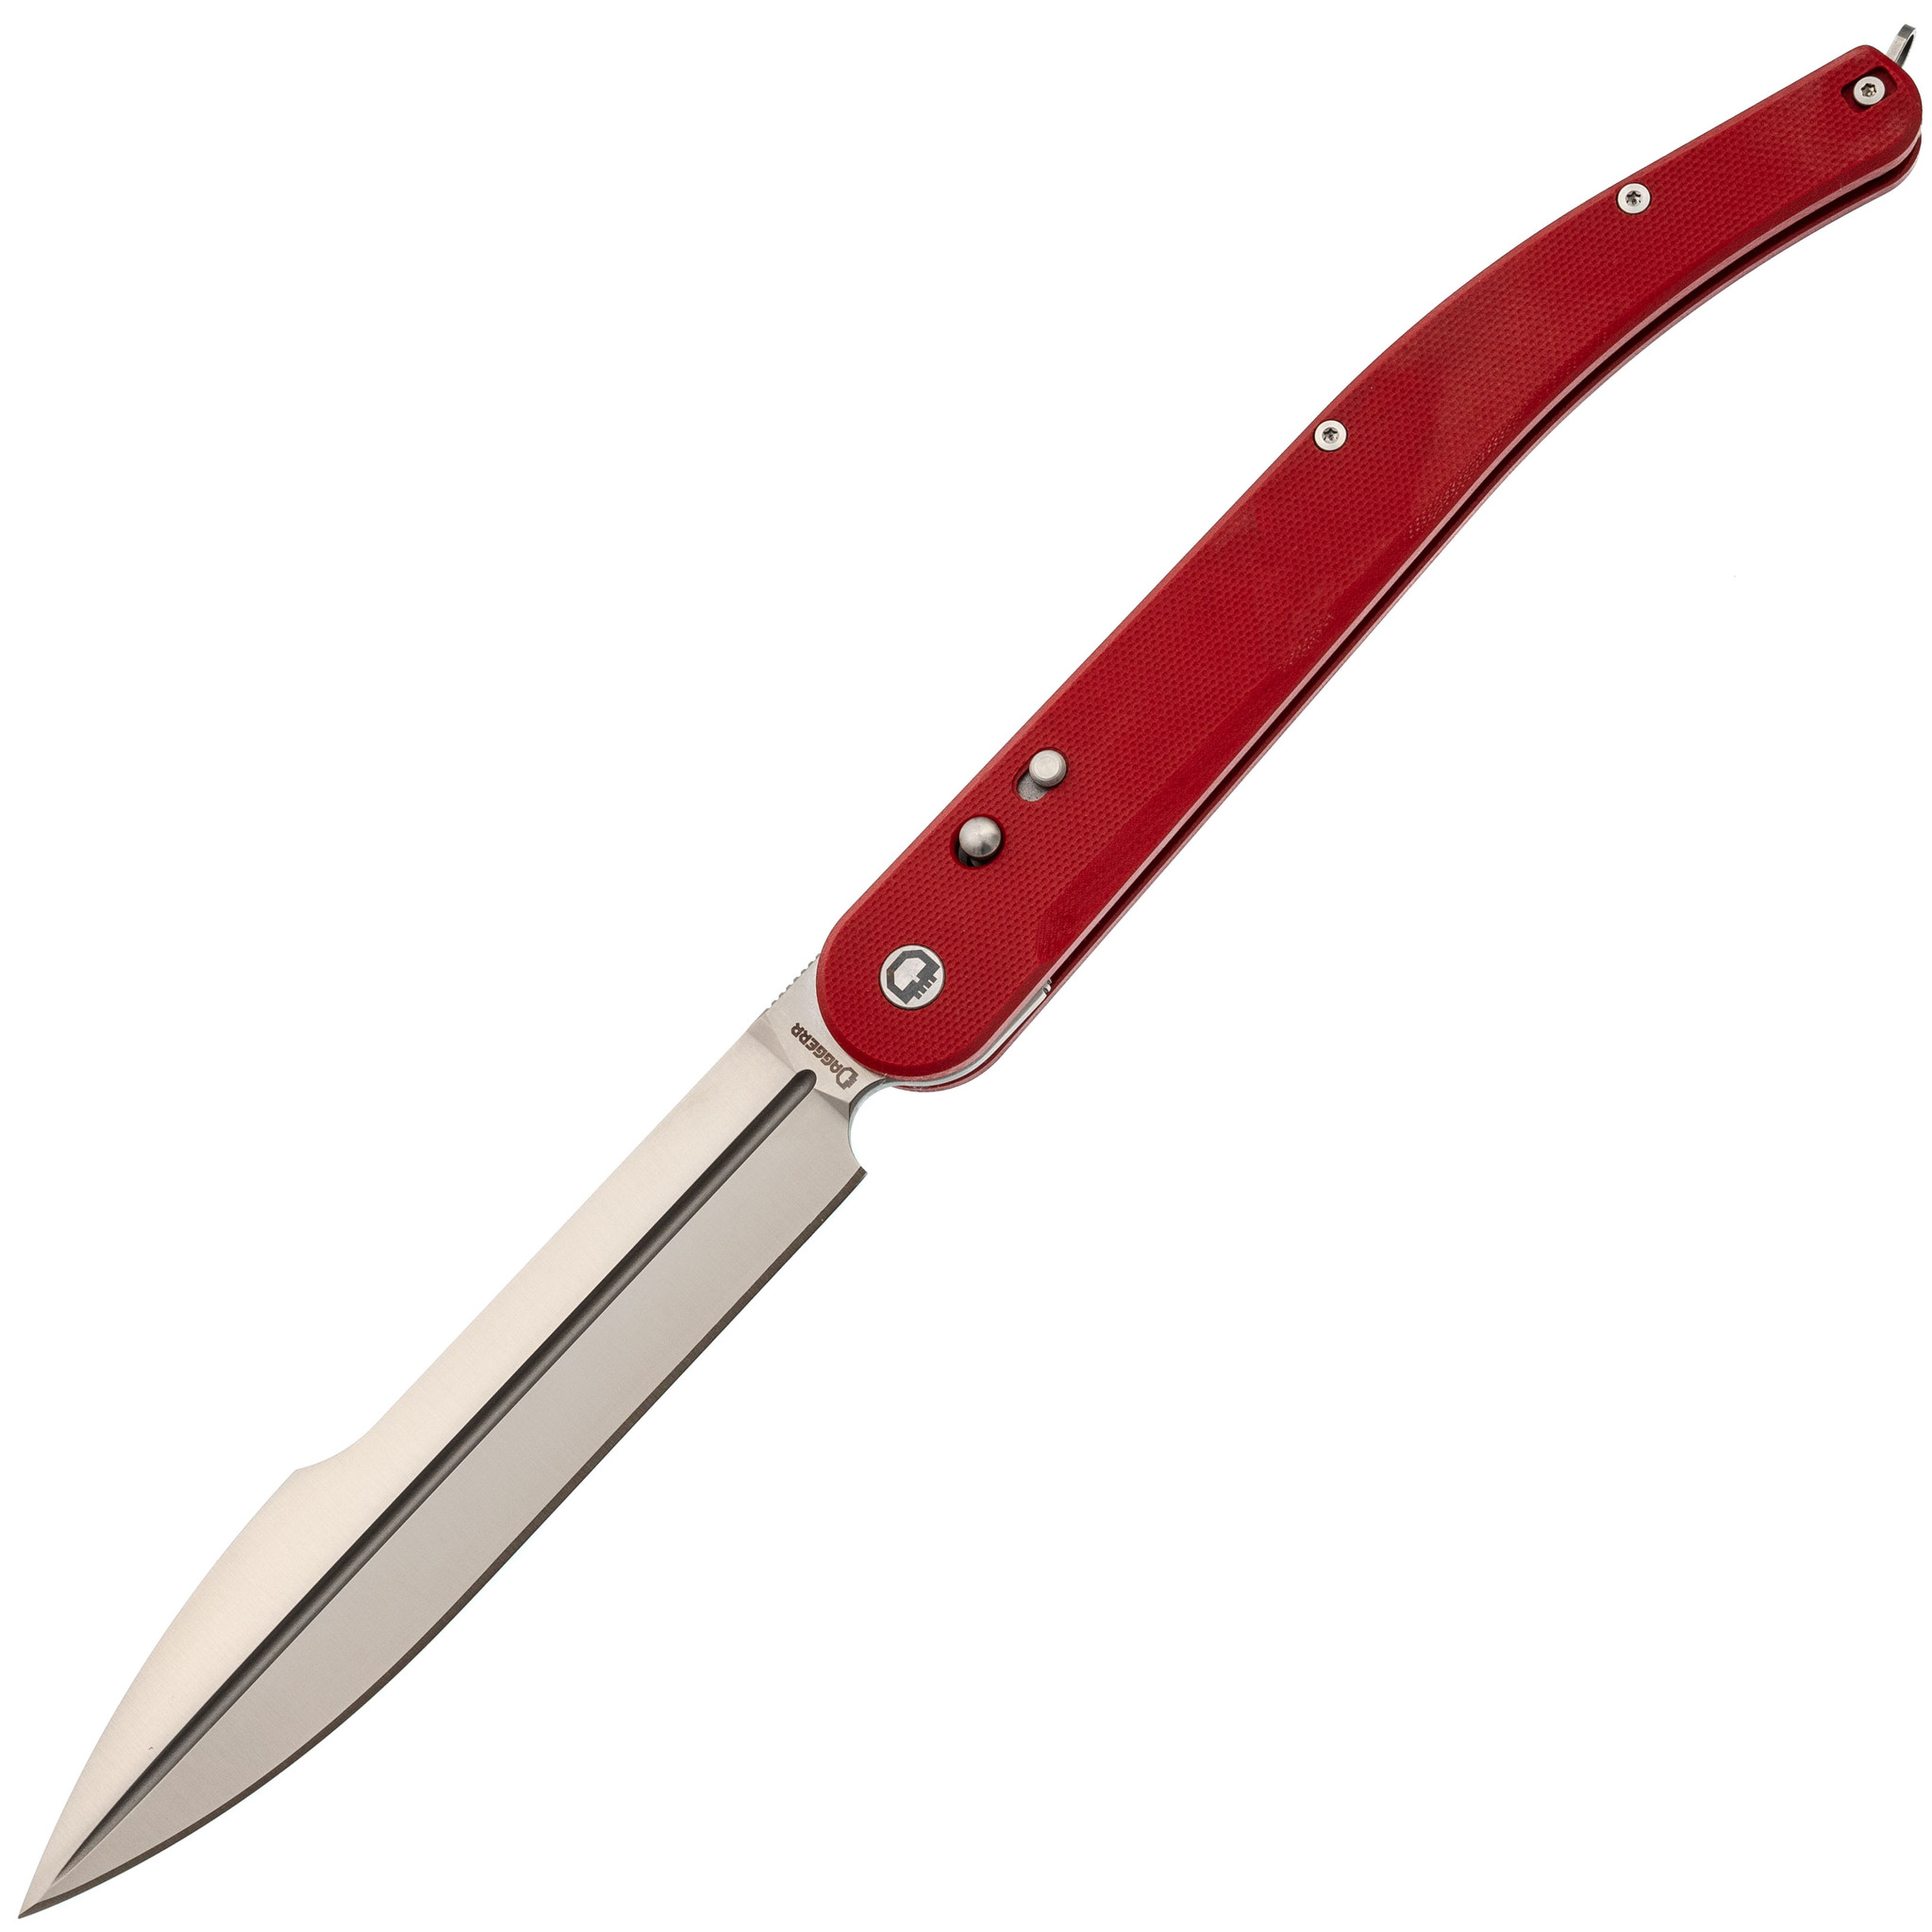 Складной нож Daggerr Navaja De Combate Red, сталь VG-10, рукоять G10 нож складной al mar mini sere 2000™ сталь vg 10 satin finish рукоять стеклотекстолит g 10